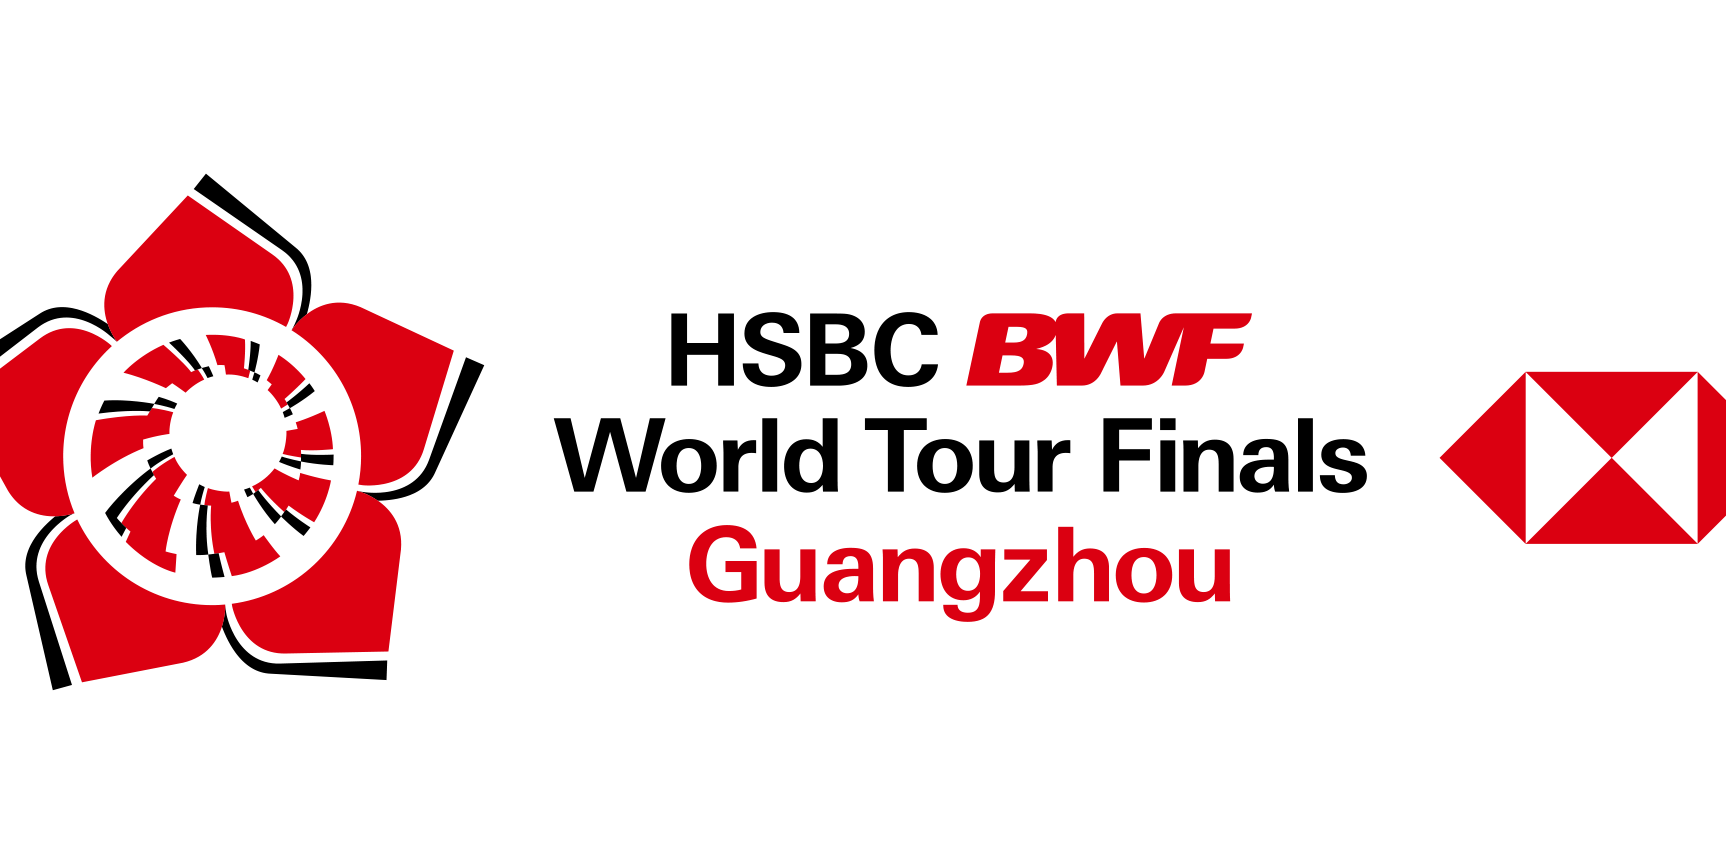 HSBC BWF World Tour Finals Returns to Guangzhou in 2022